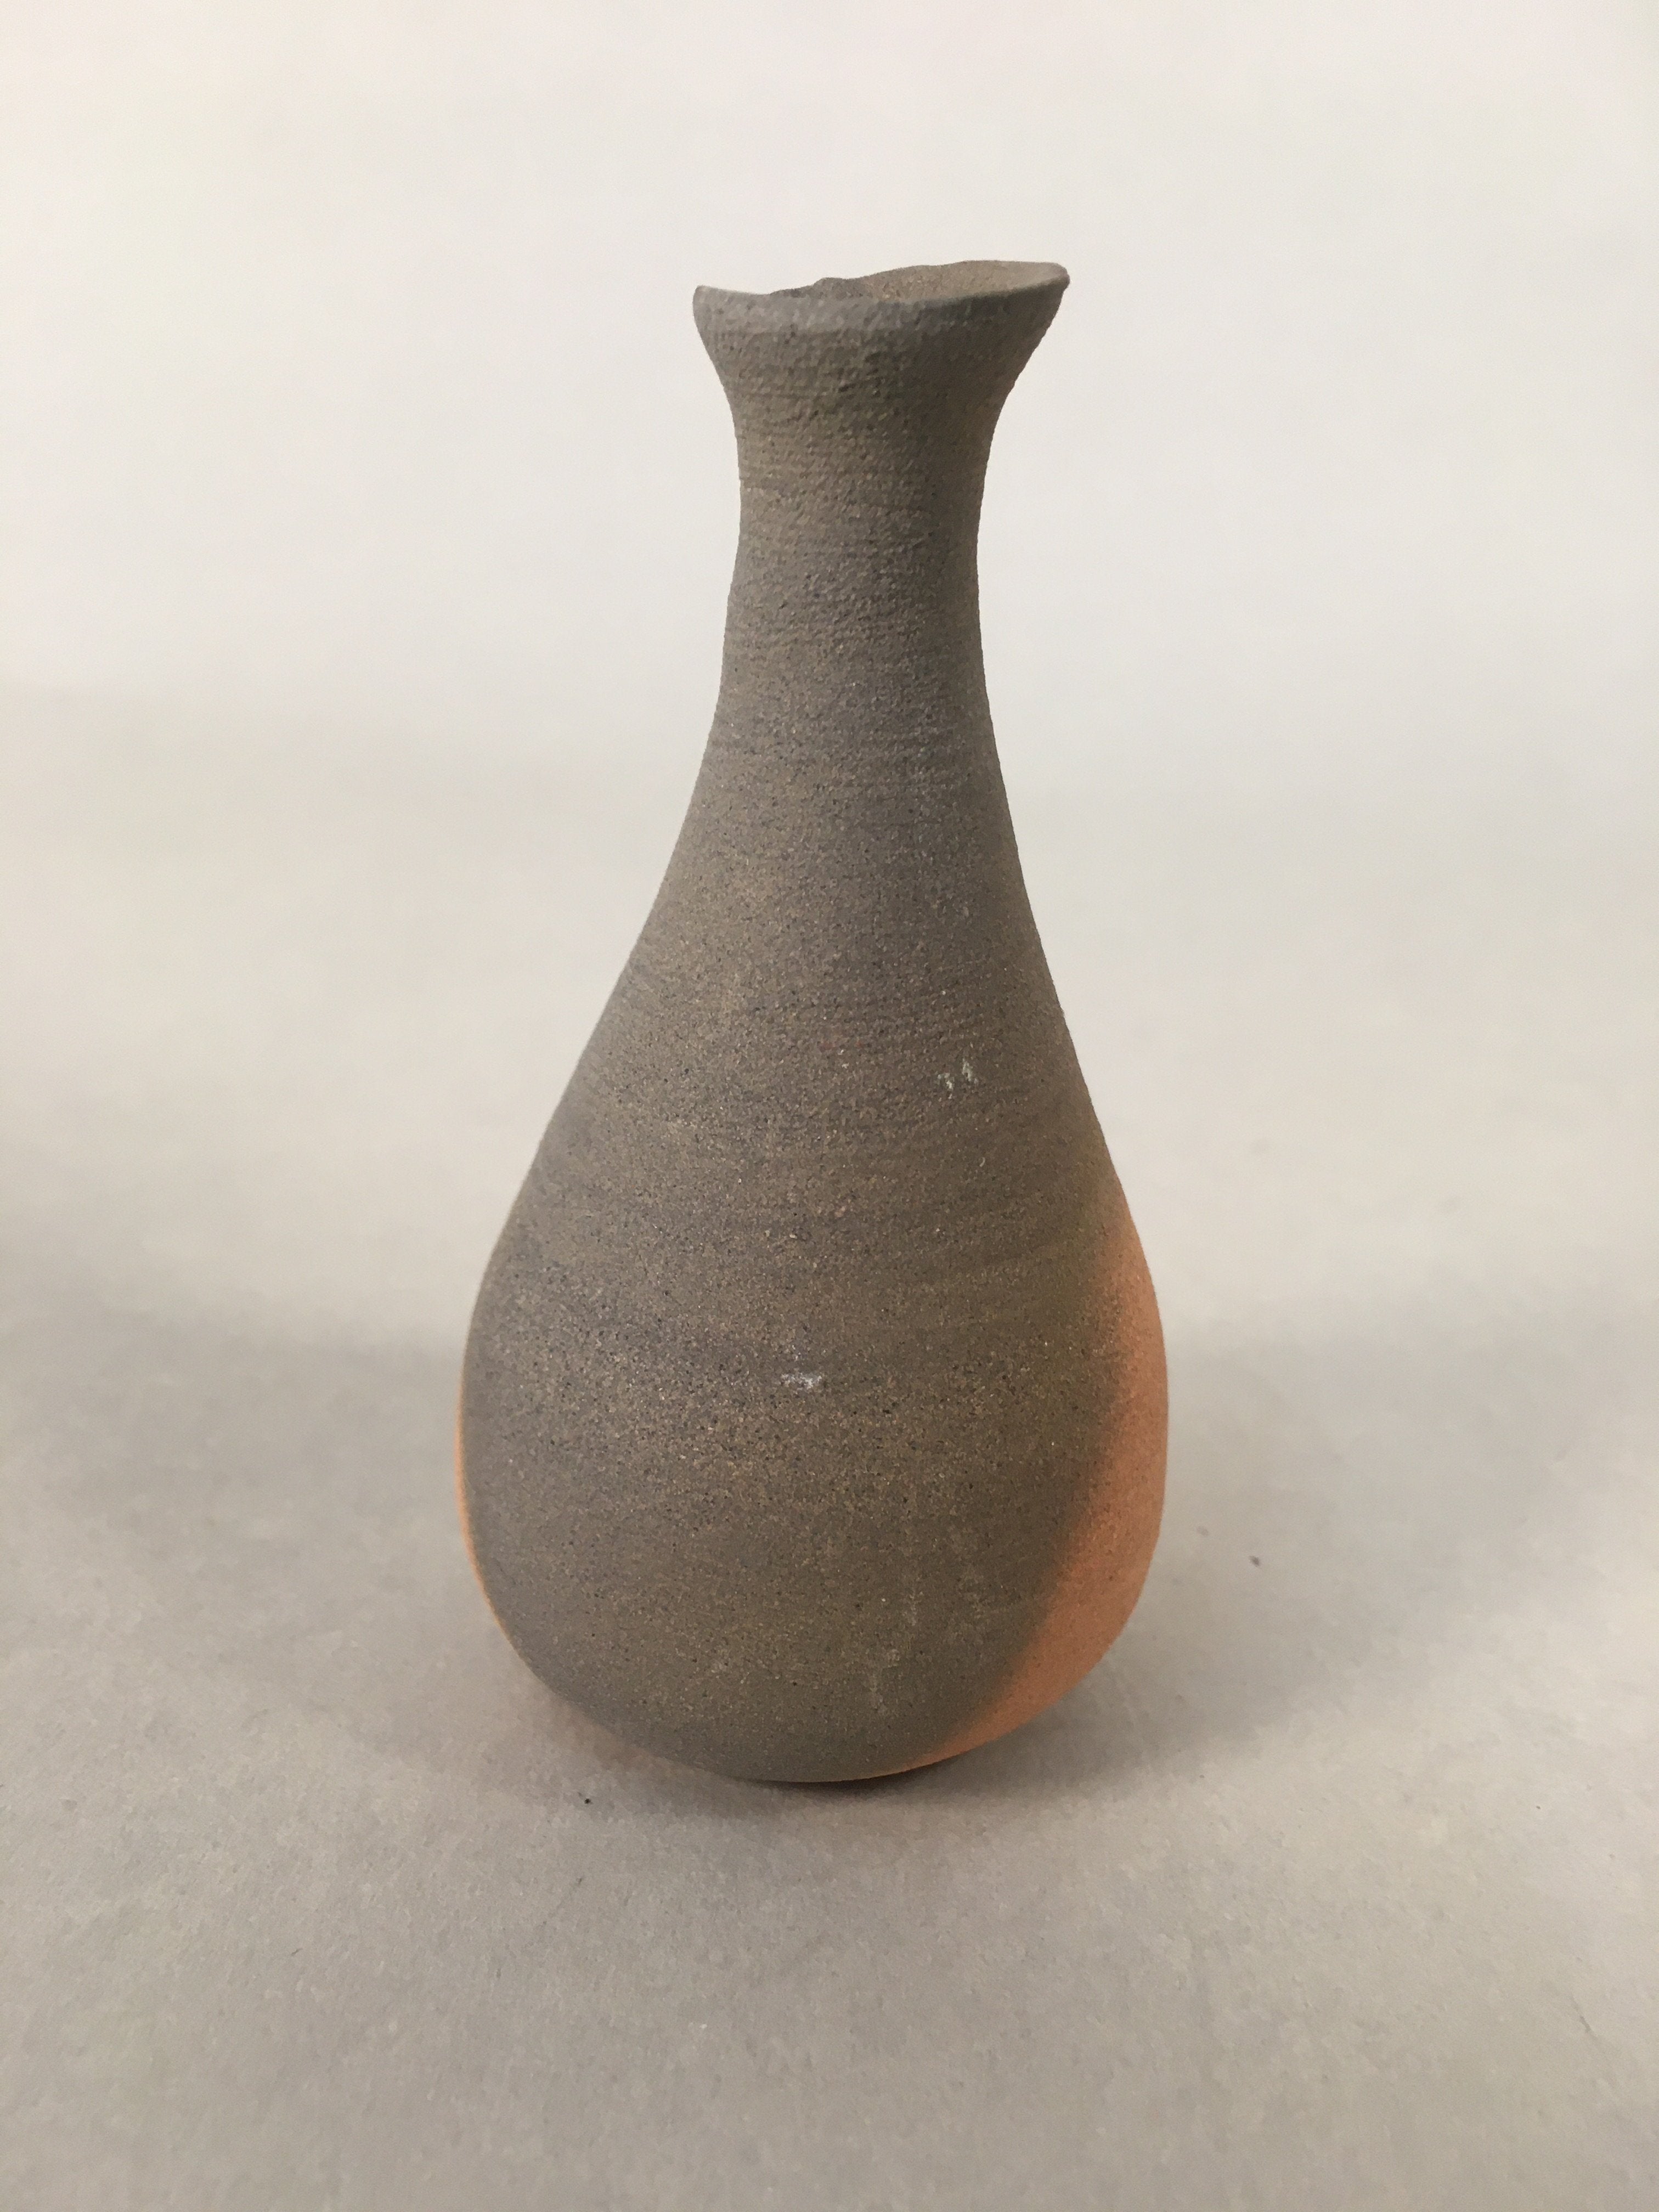 Japanese Ceramic Single Flower Vase Kabin Vtg Pottery Gray Long Neck MFV74